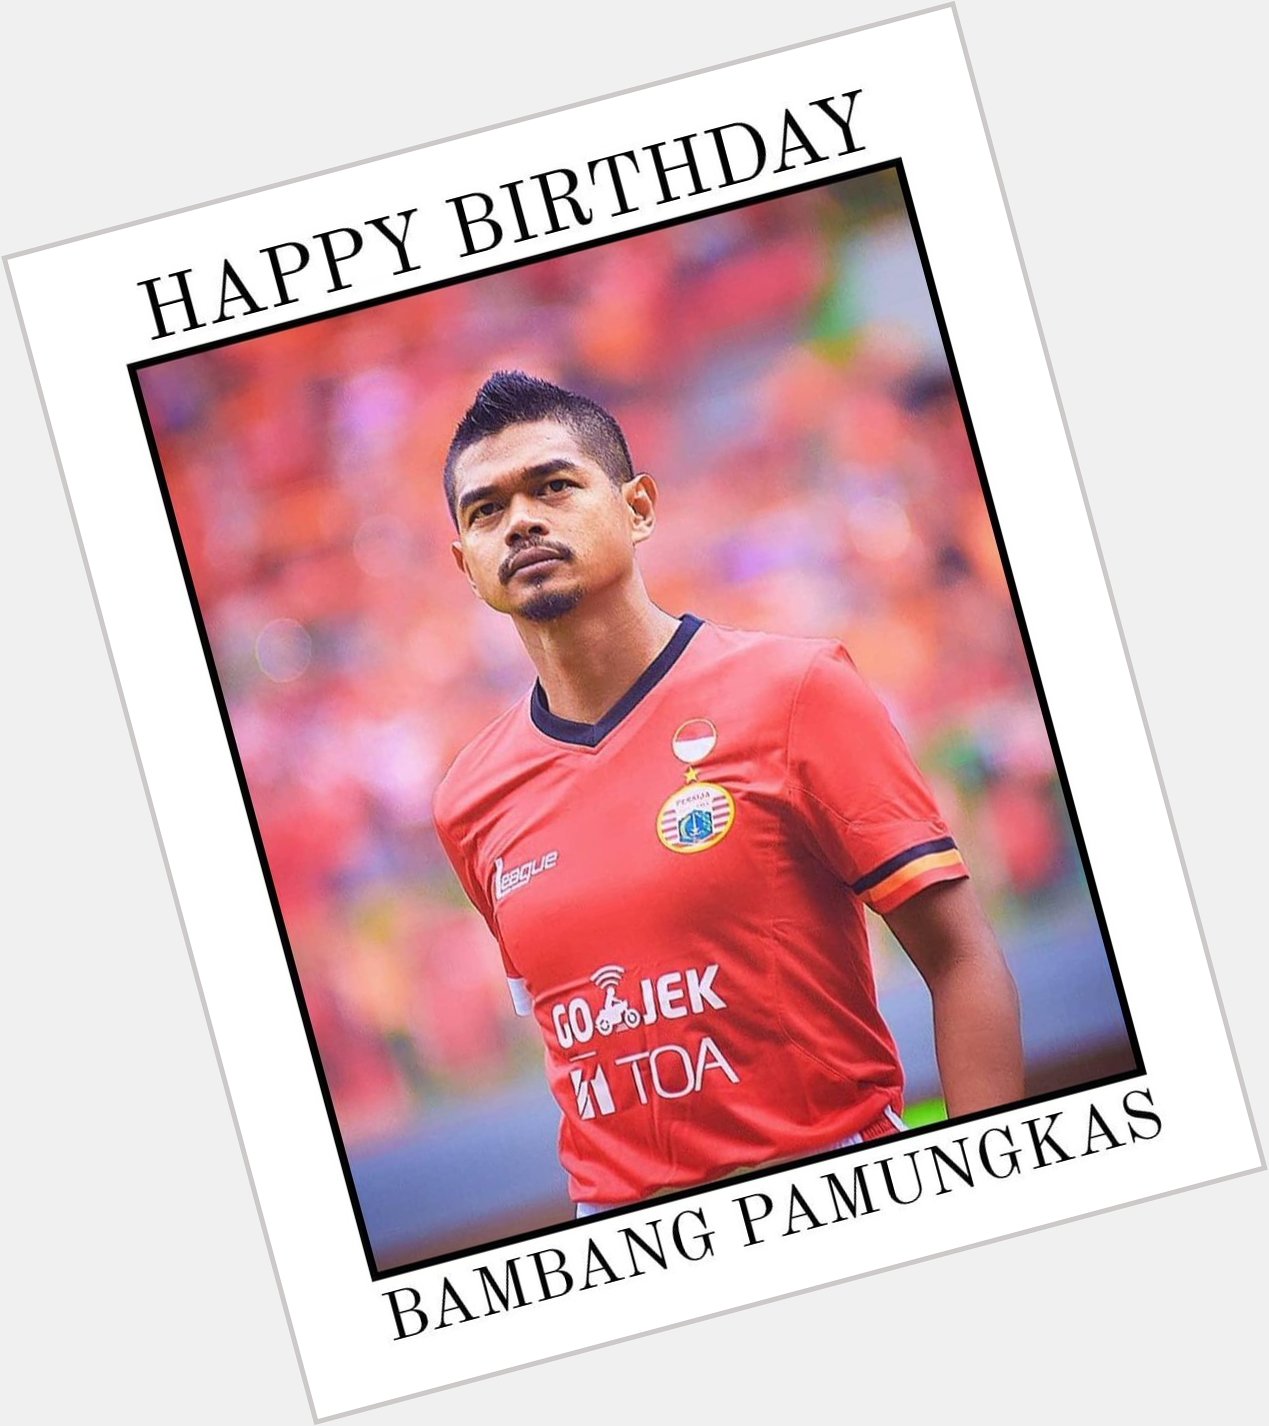 Happy birthday, Bambang Pamungkas! 